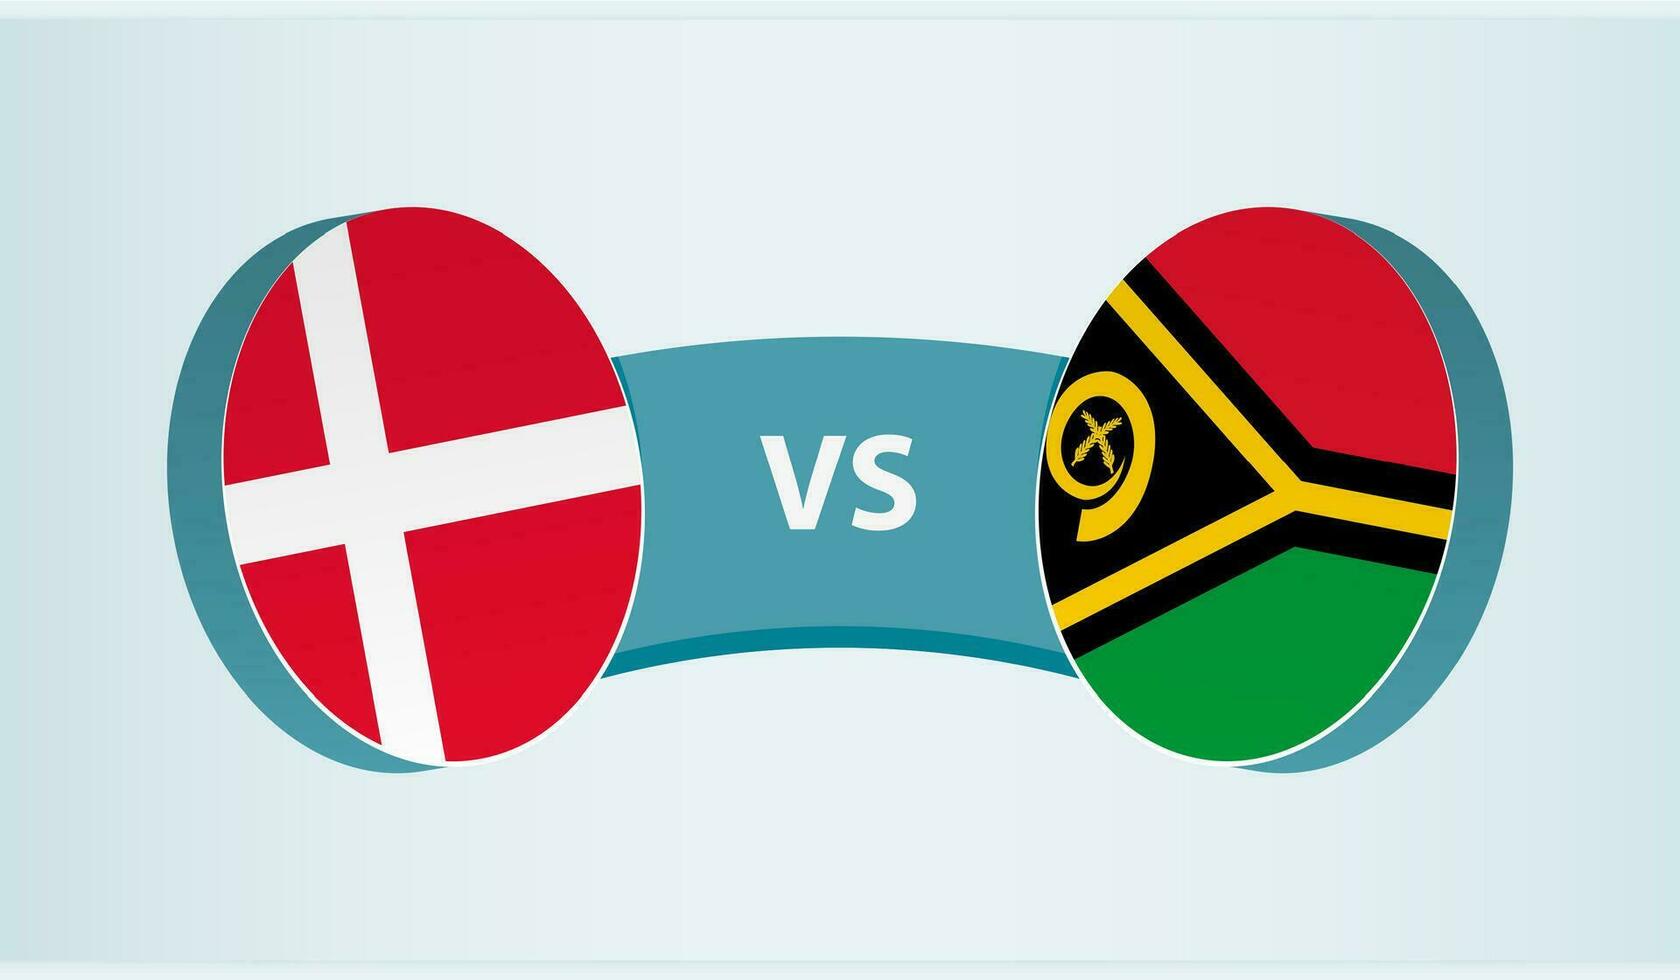 Denmark versus Vanuatu, team sports competition concept. vector